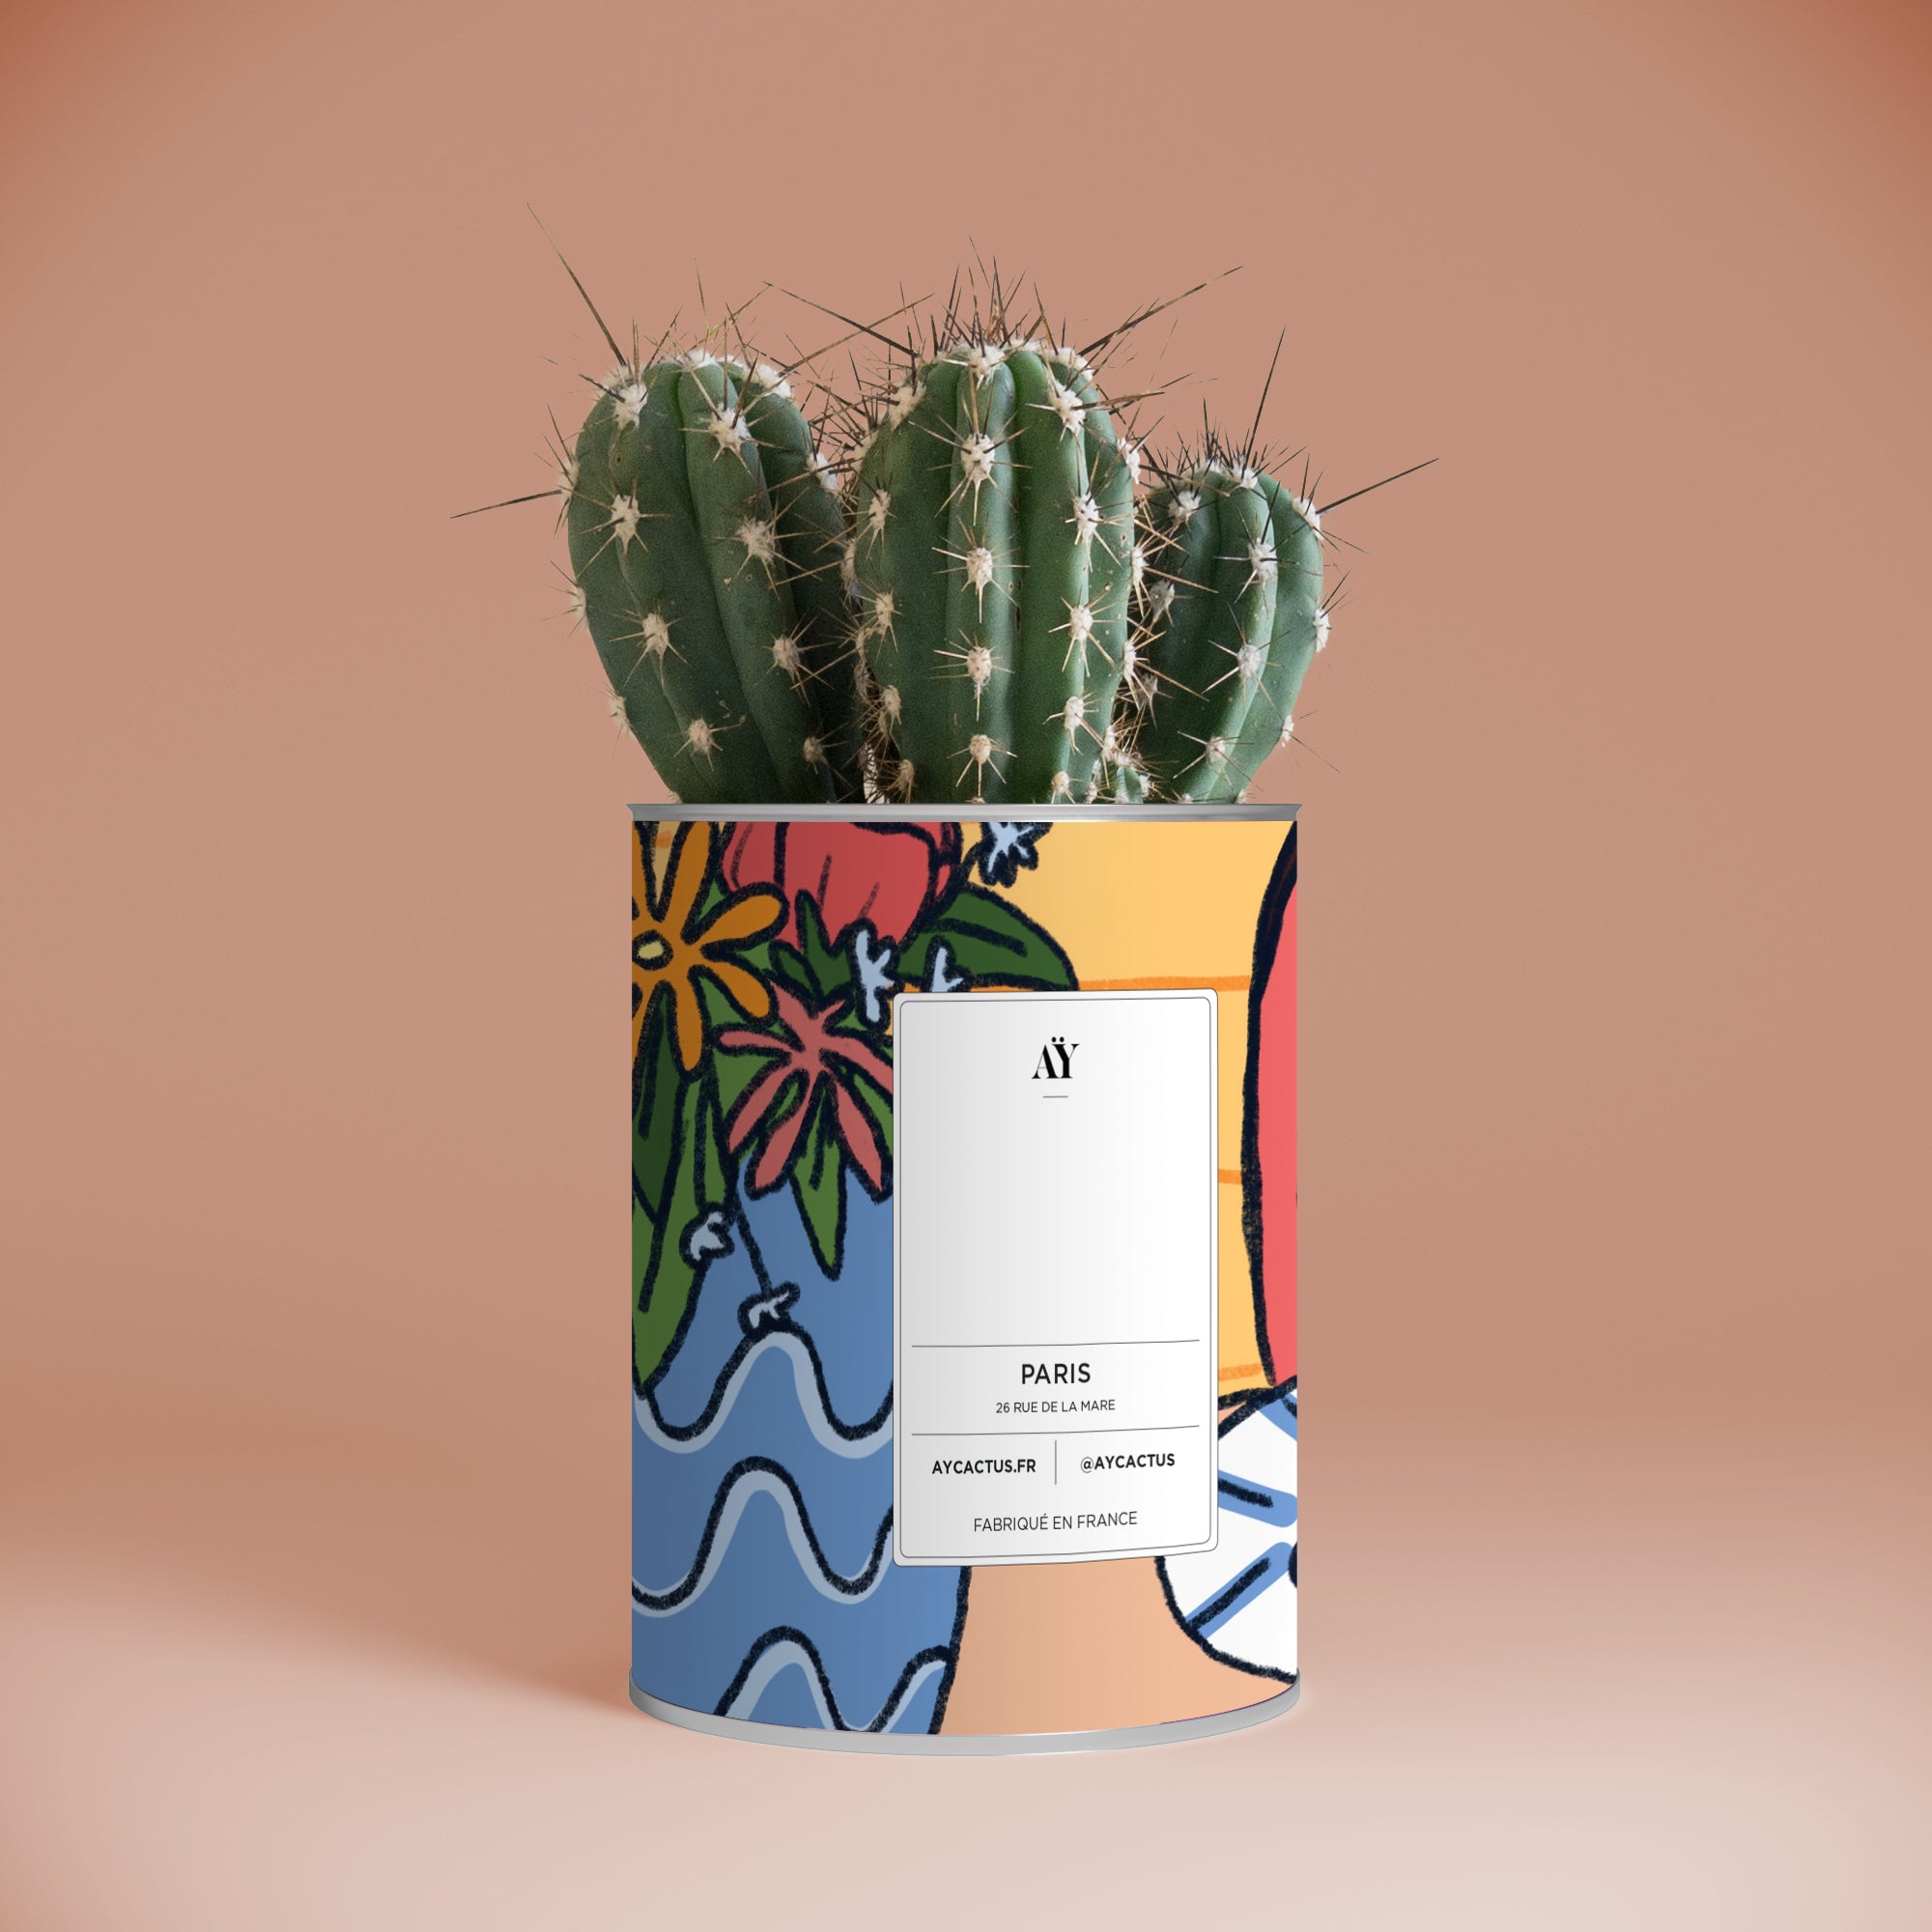 personnalisation cactus